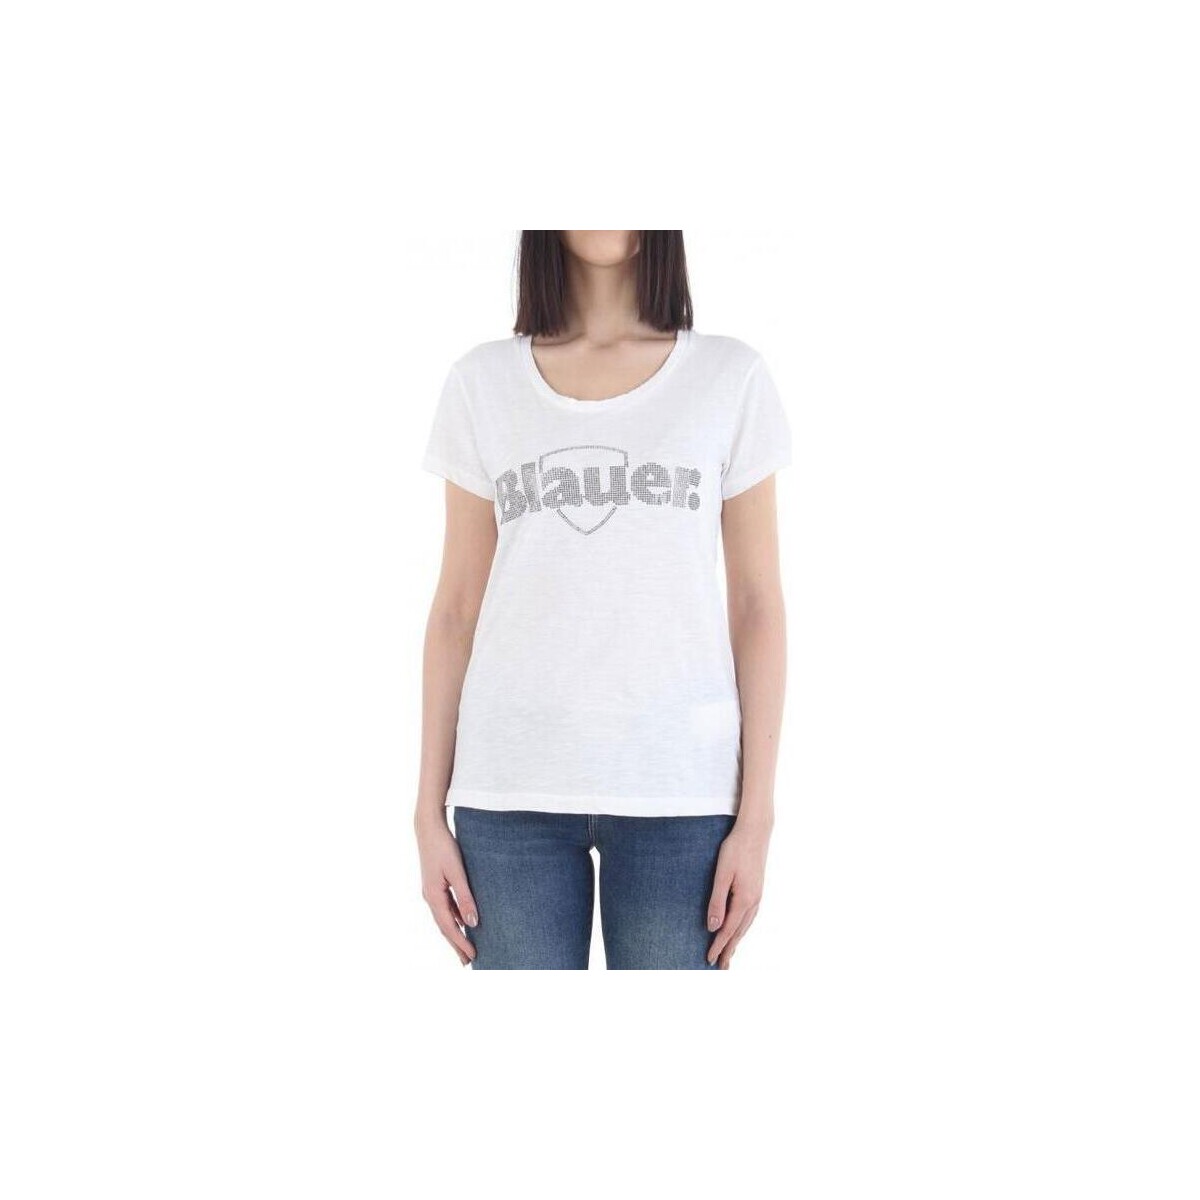 Abbigliamento Donna T-shirt maniche corte Blauer  Bianco